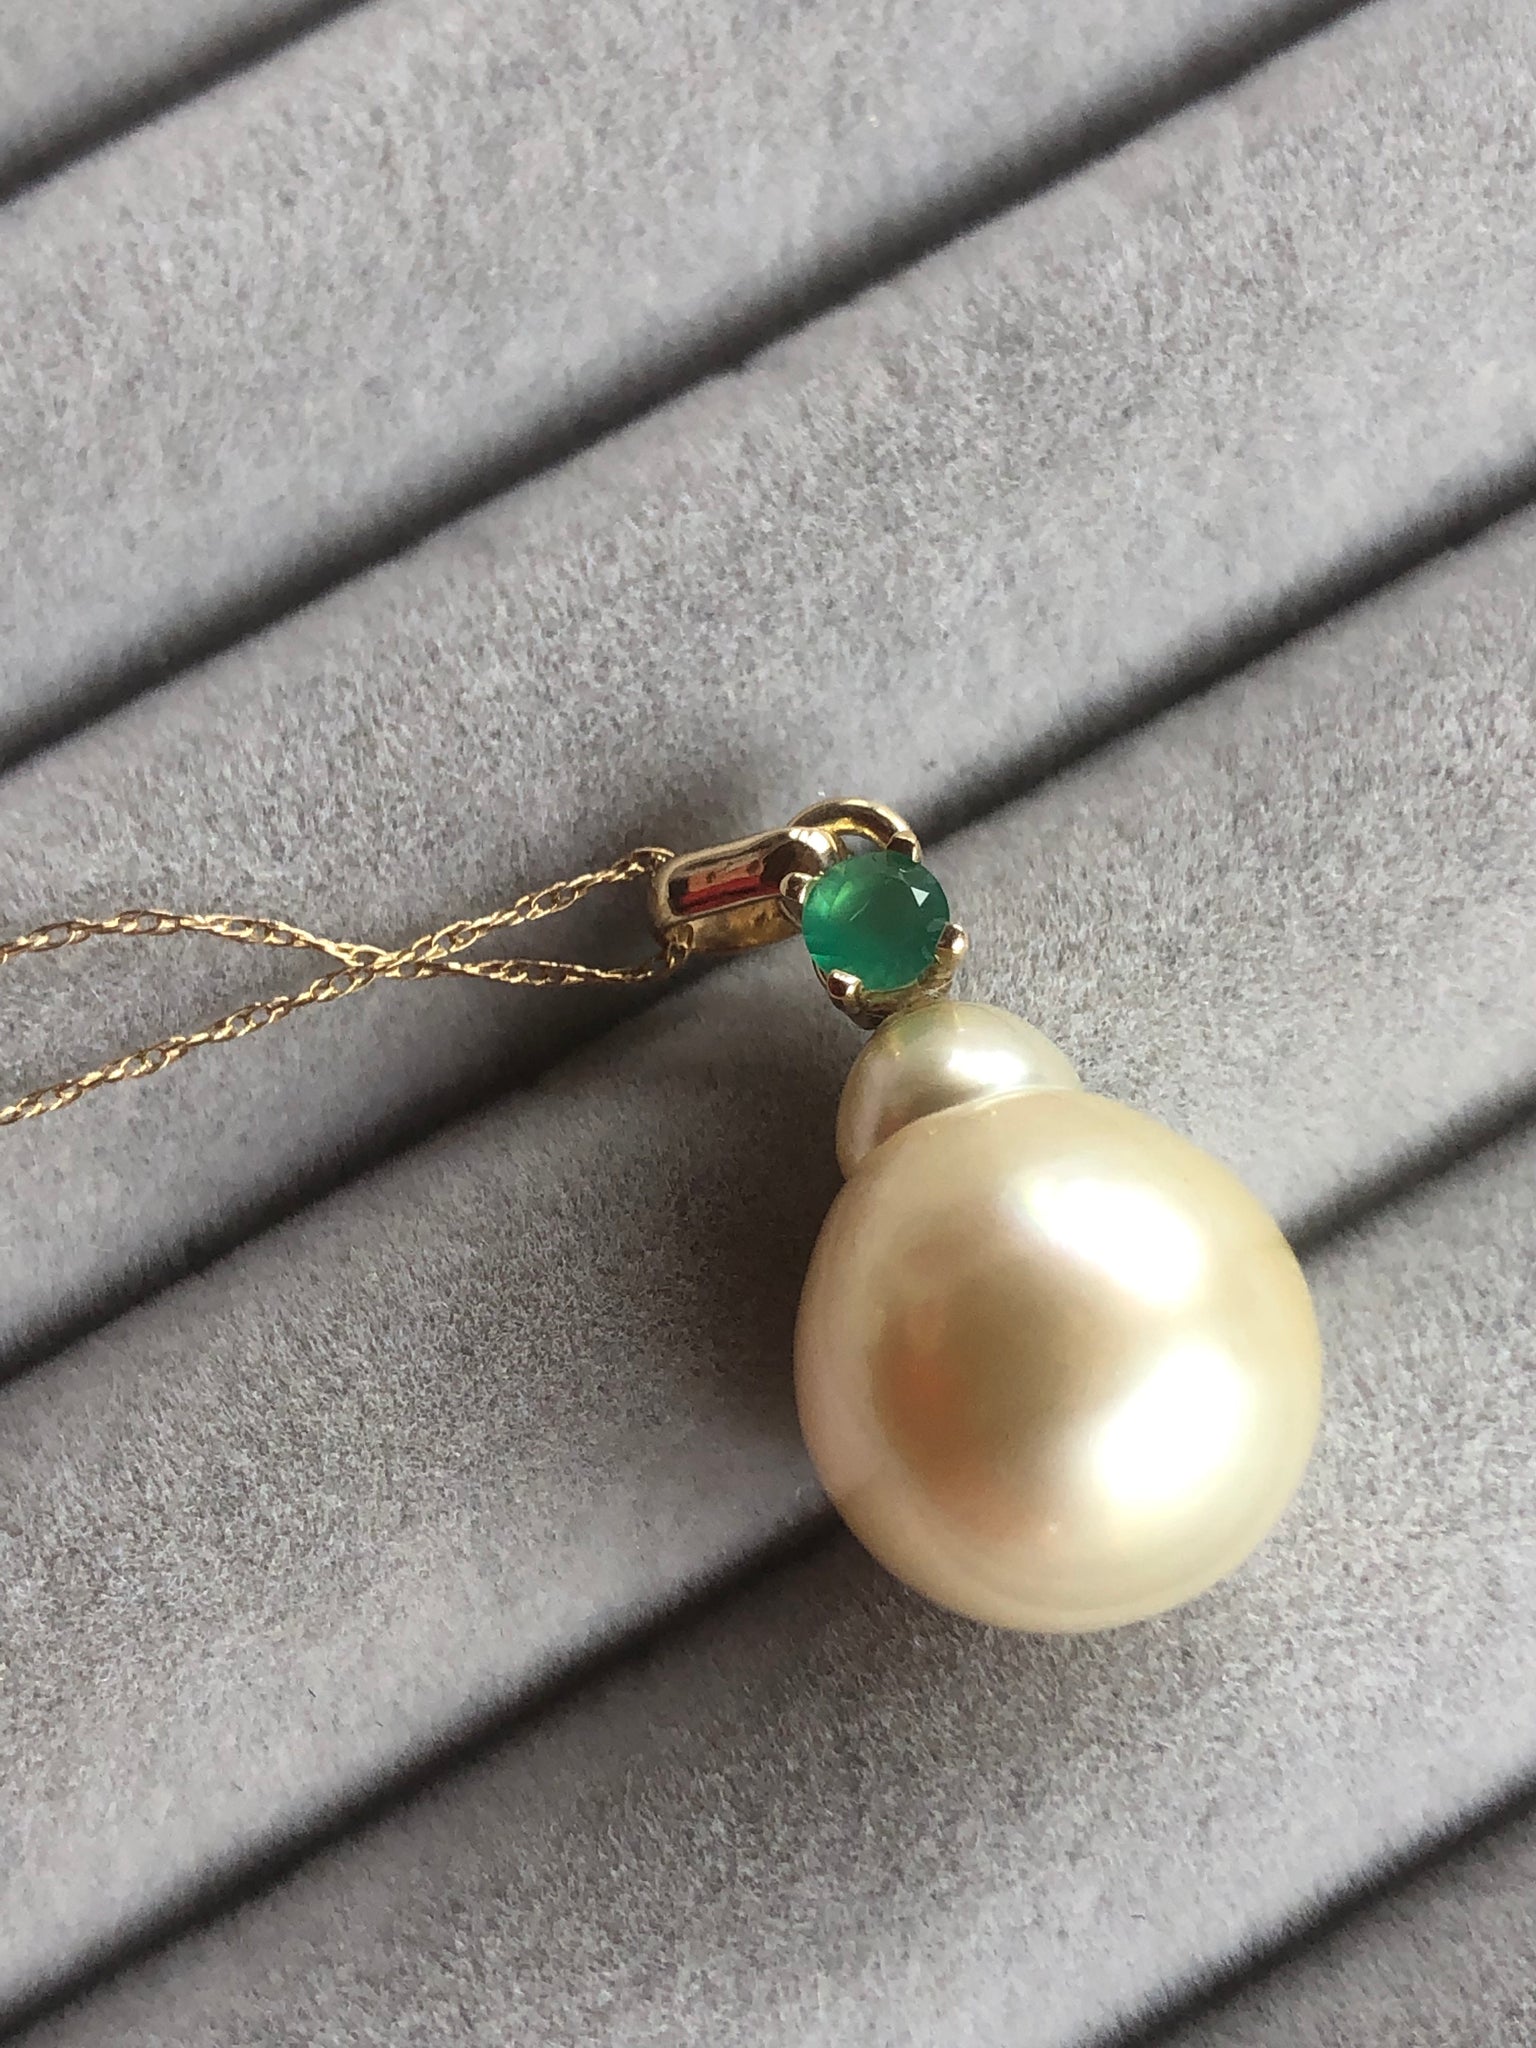 Emerald South Sea Pearl Pendant Necklace 18 Karat